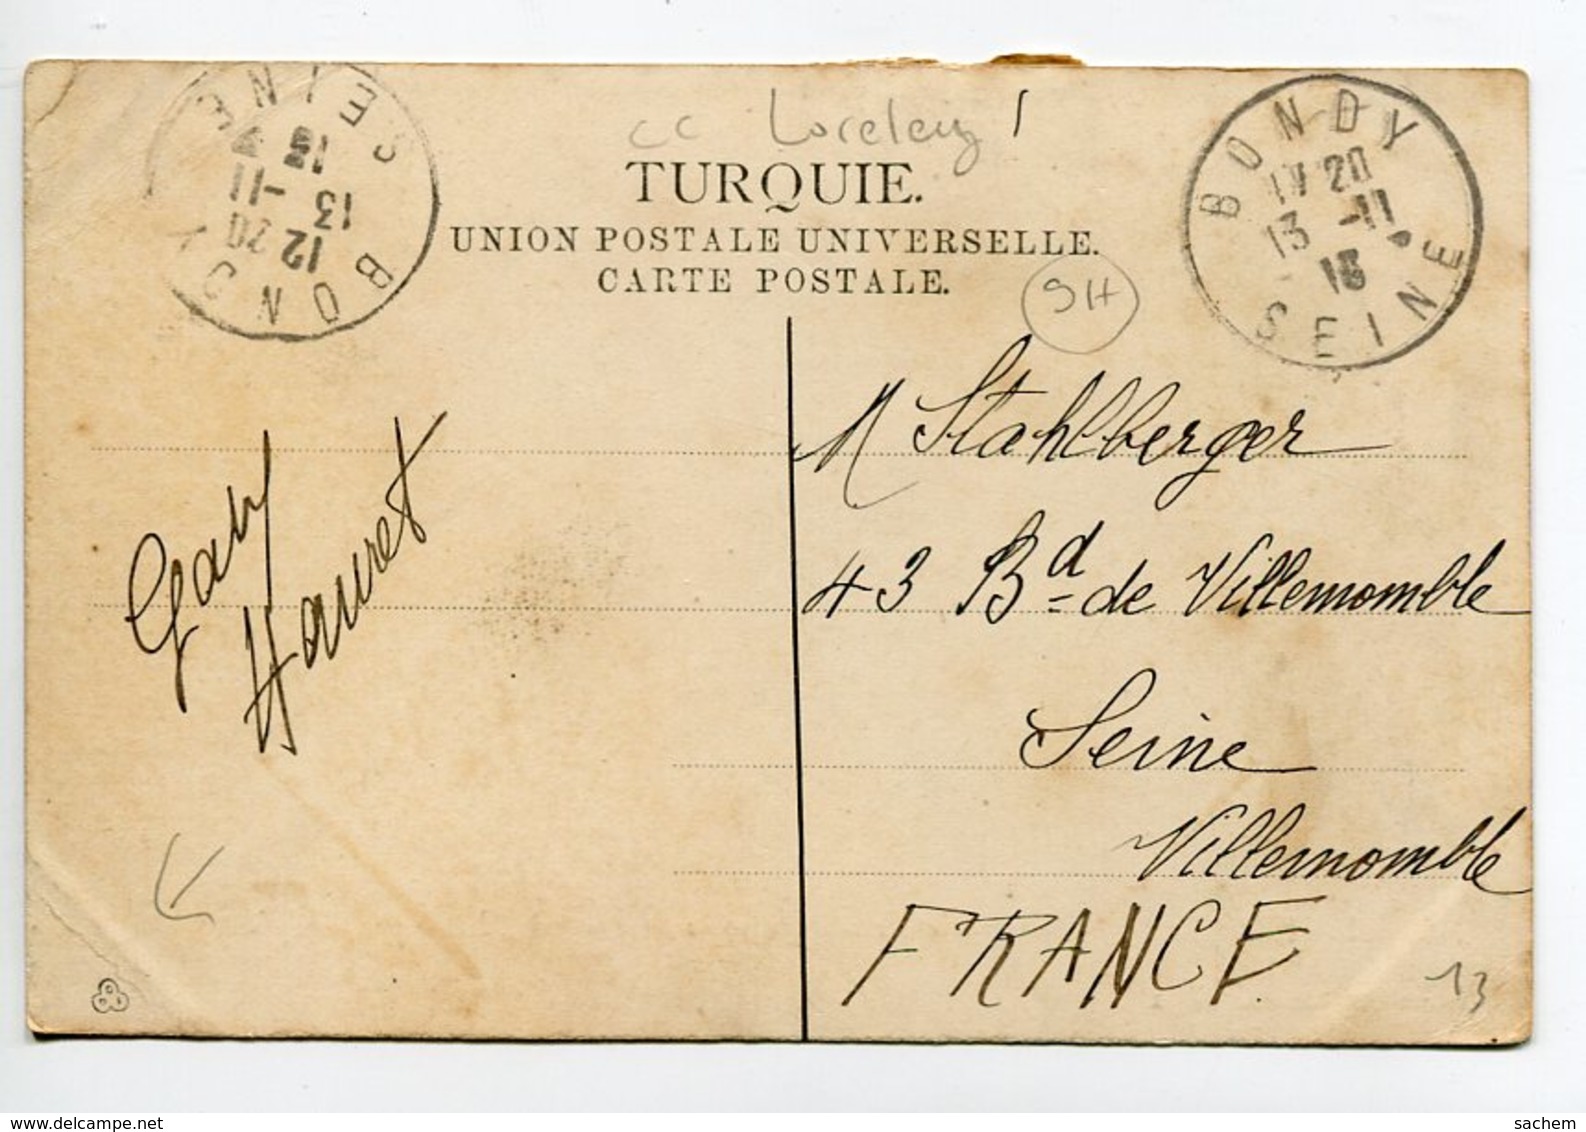 TURQUIE  CONSTANTINOPLE  THERAPIA Et Bateau Stationnaire Allemand LORELEY No 27 Zellich Editeur  1916  D11  2019 - Türkei